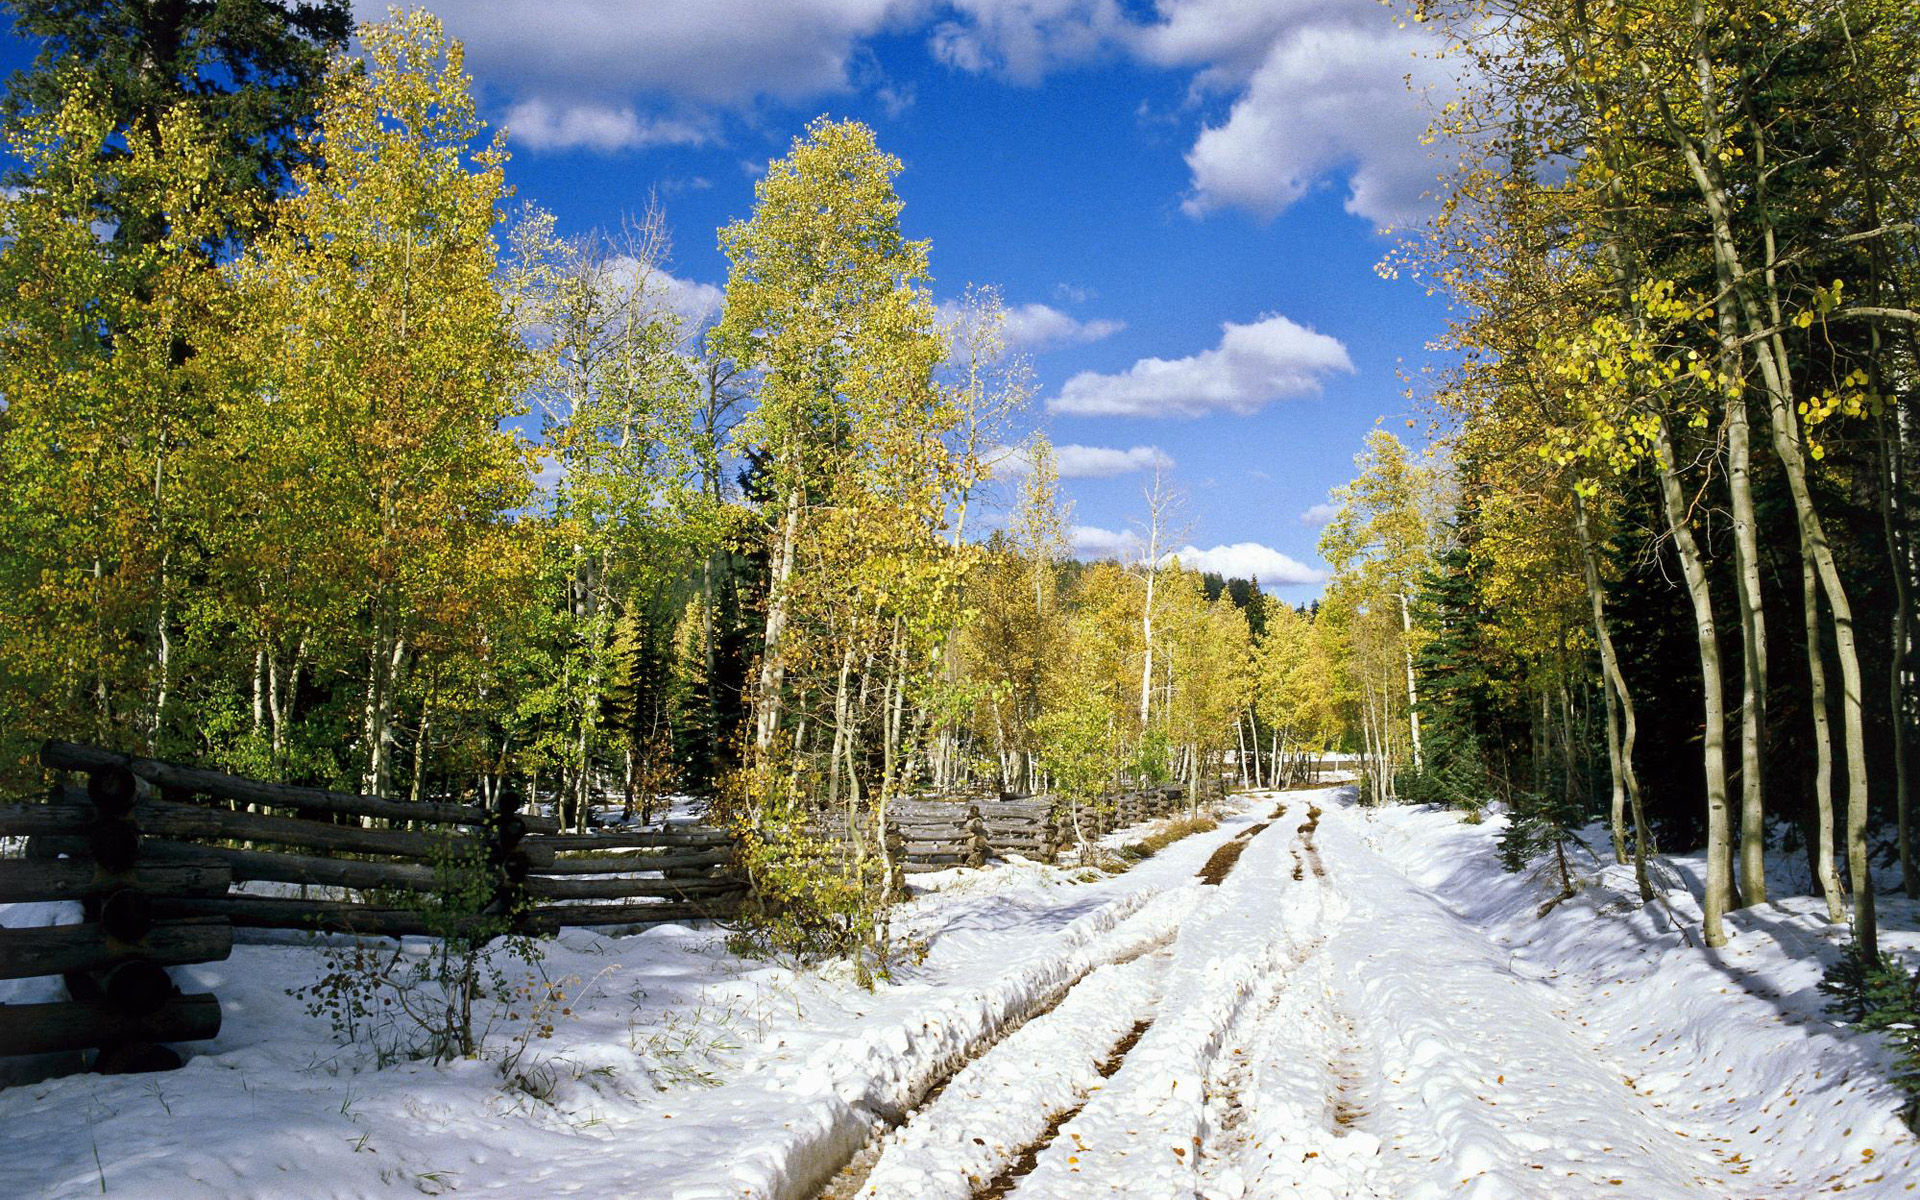 Скачать картинку Снег, Зима, Дерево, Земля/природа в телефон бесплатно.